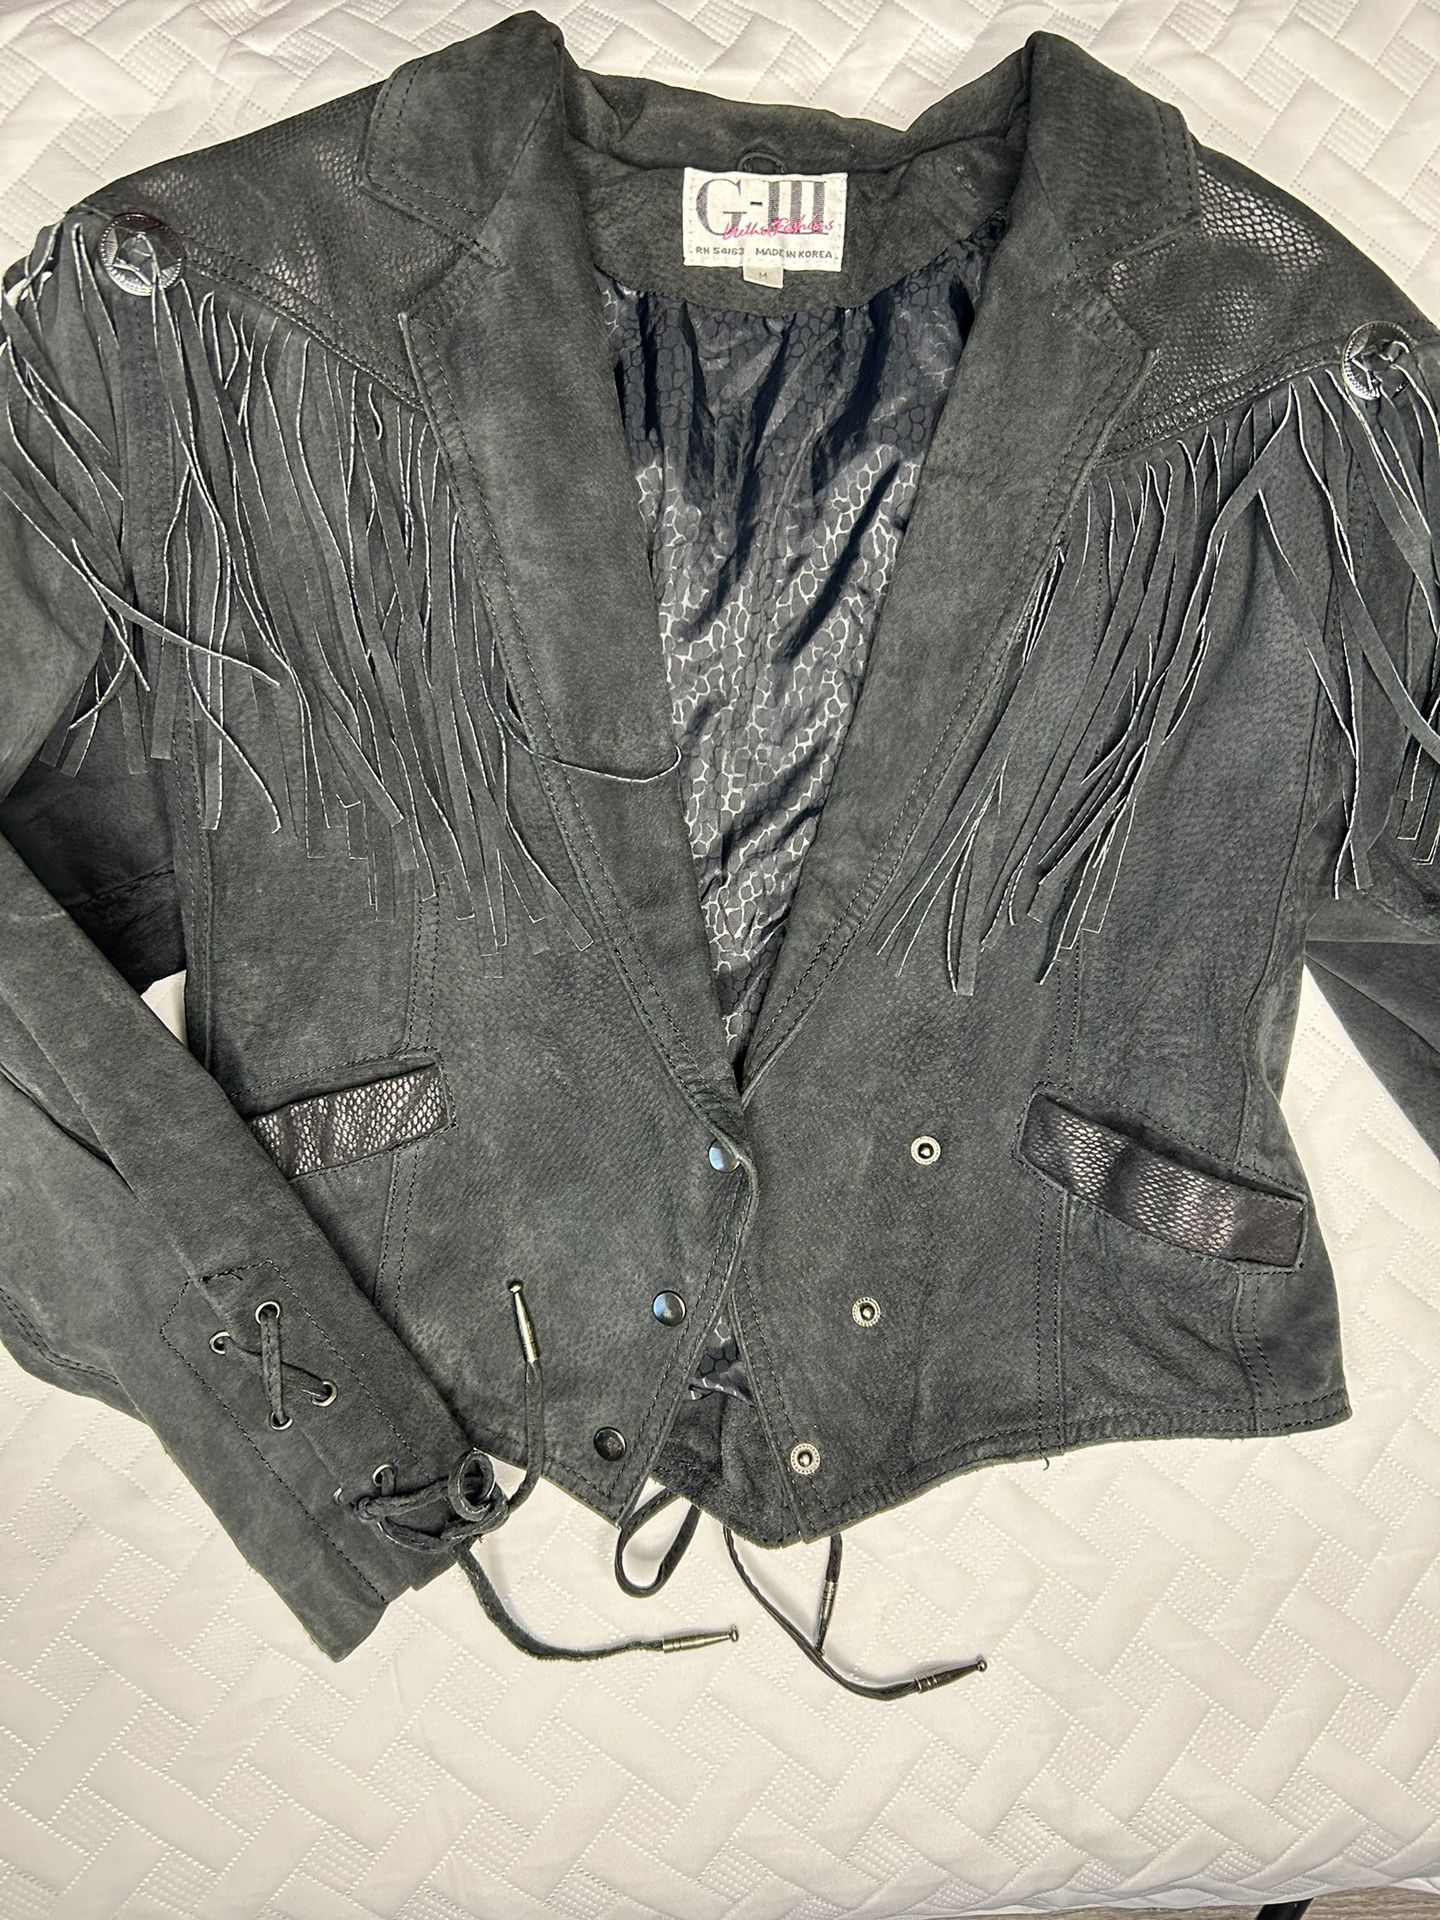 G-III Leather Fashions Black Fringe Leather Vintage Jacket size M